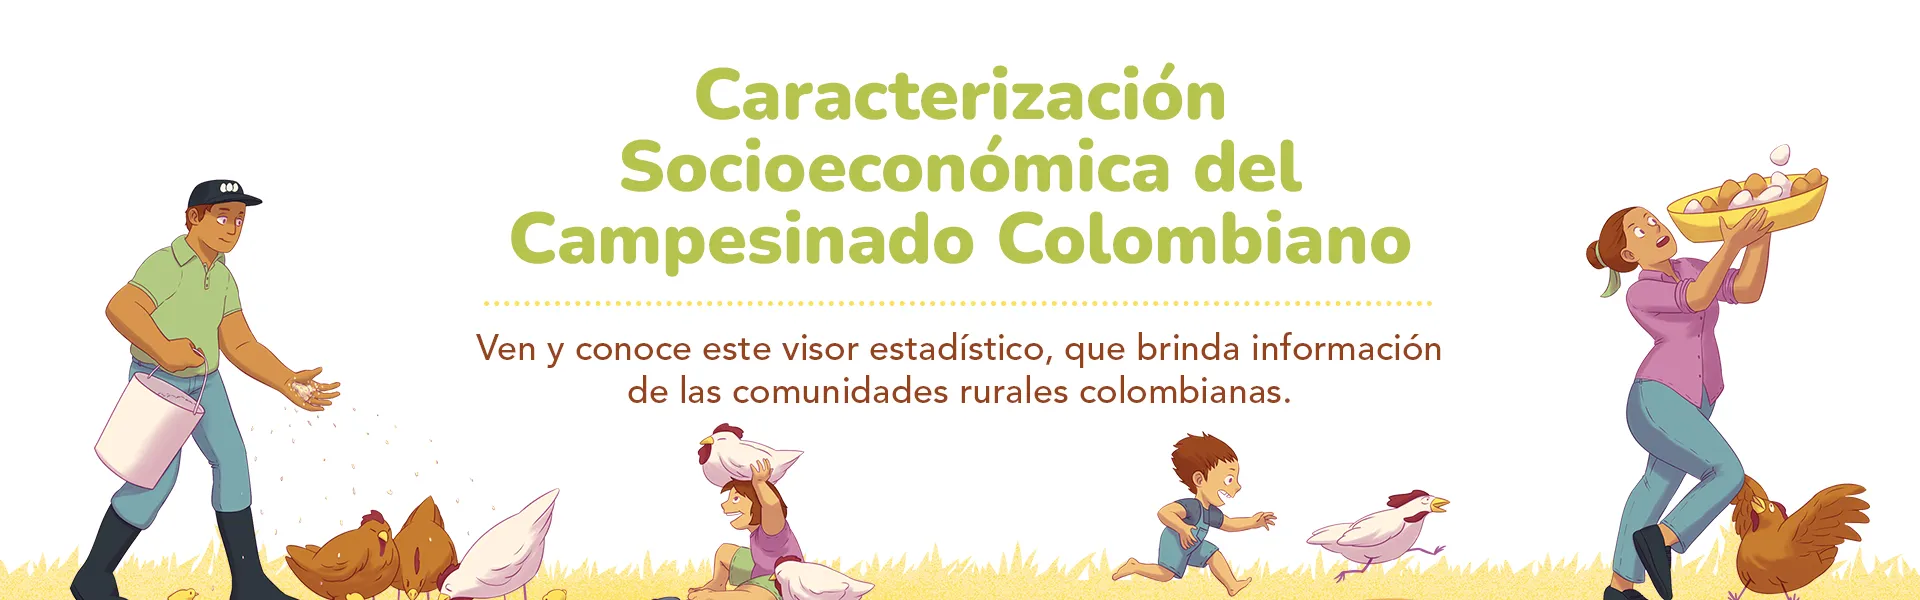 CARACTERIZACIÓN SOCIODEMOGRÁFICA DEL CAMPESINADO COLOMBIANO